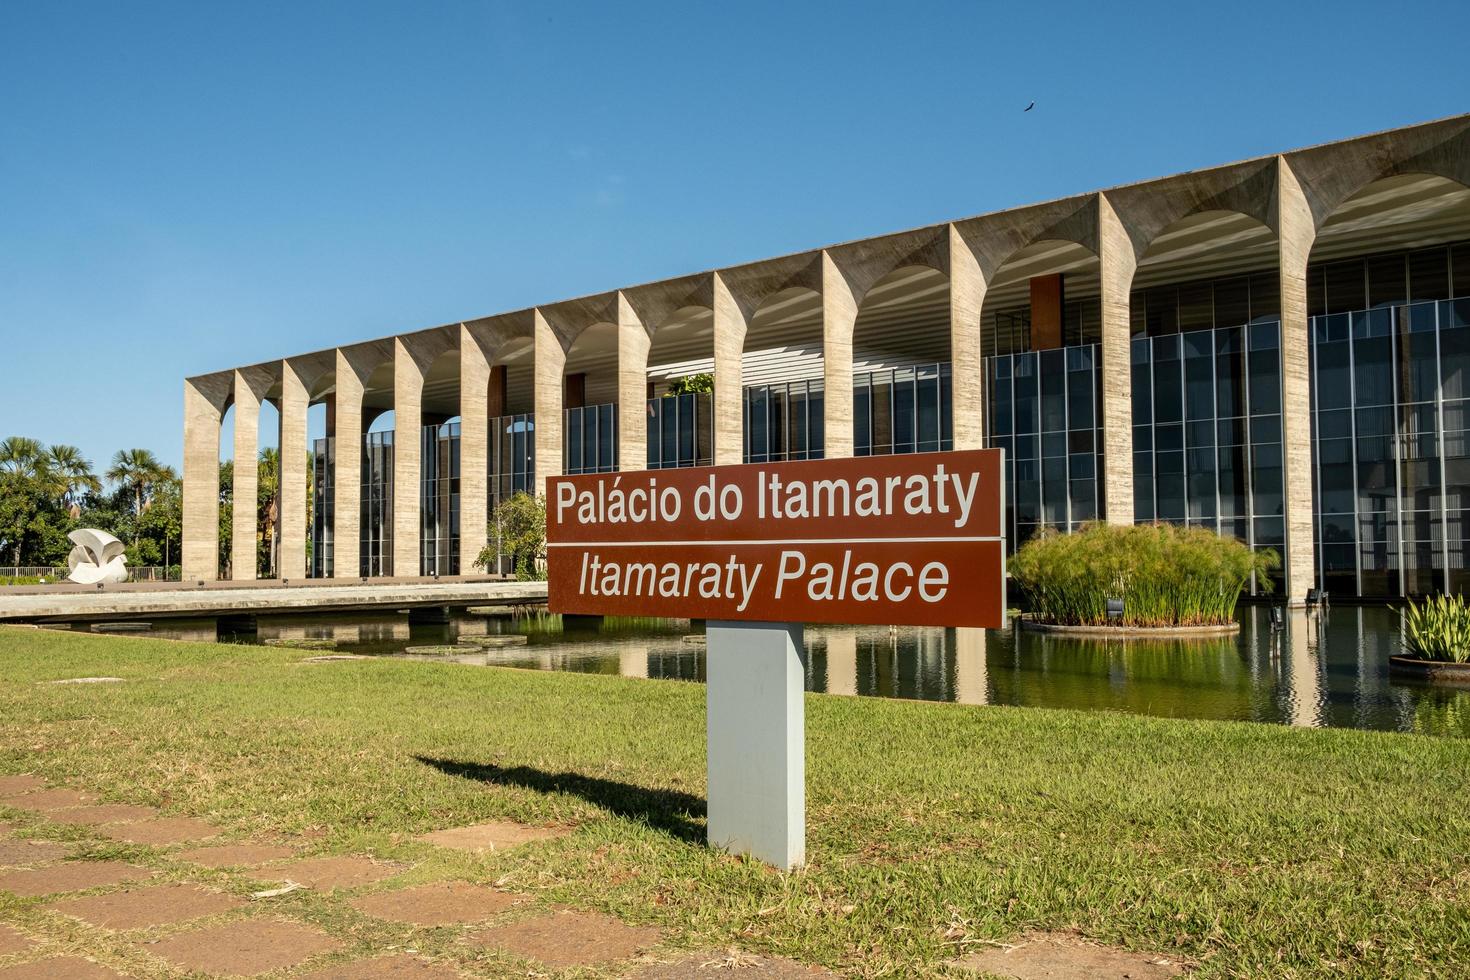 sao paulo, brazilië, mei 2019 - itamaraty paleis, hoofdkwartier van het ministerie van buitenlandse zaken van brazilië foto